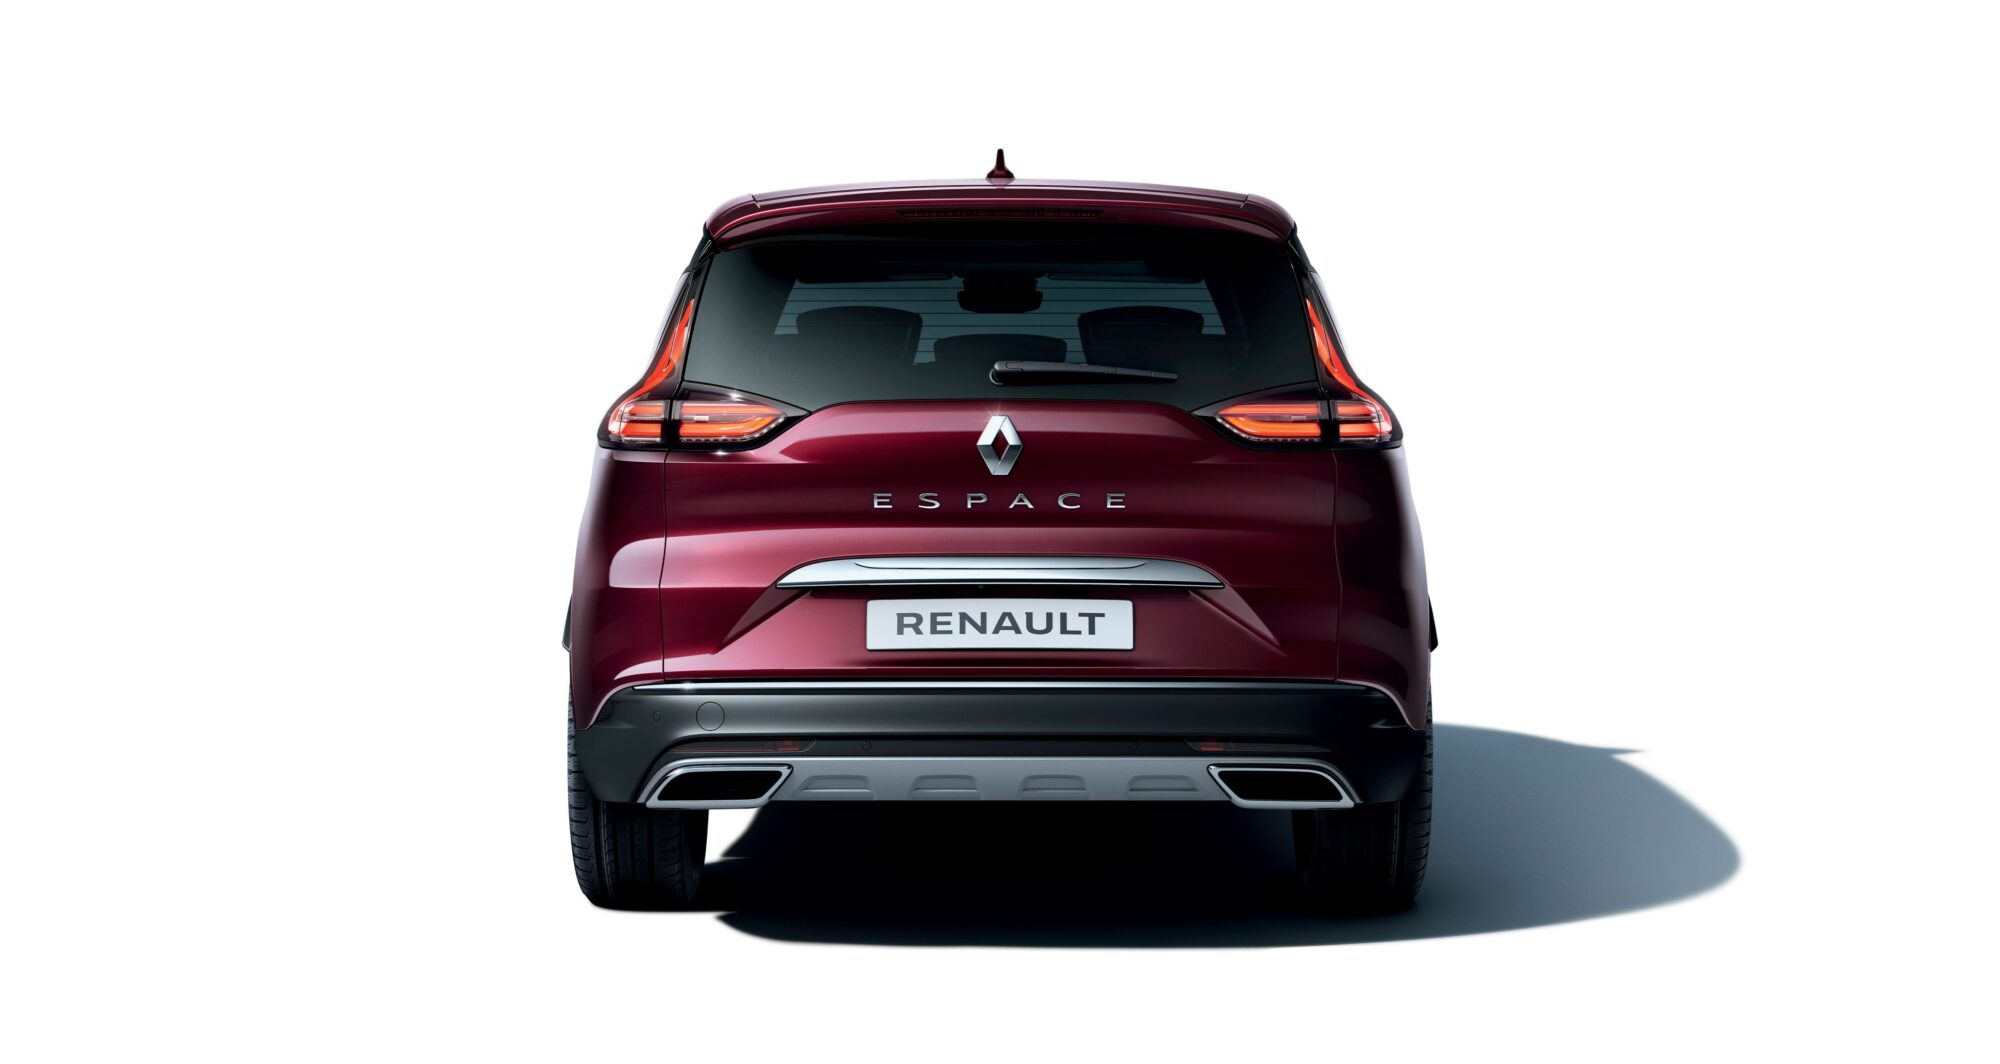 2019 - New Renault ESPACE Initiale Paris